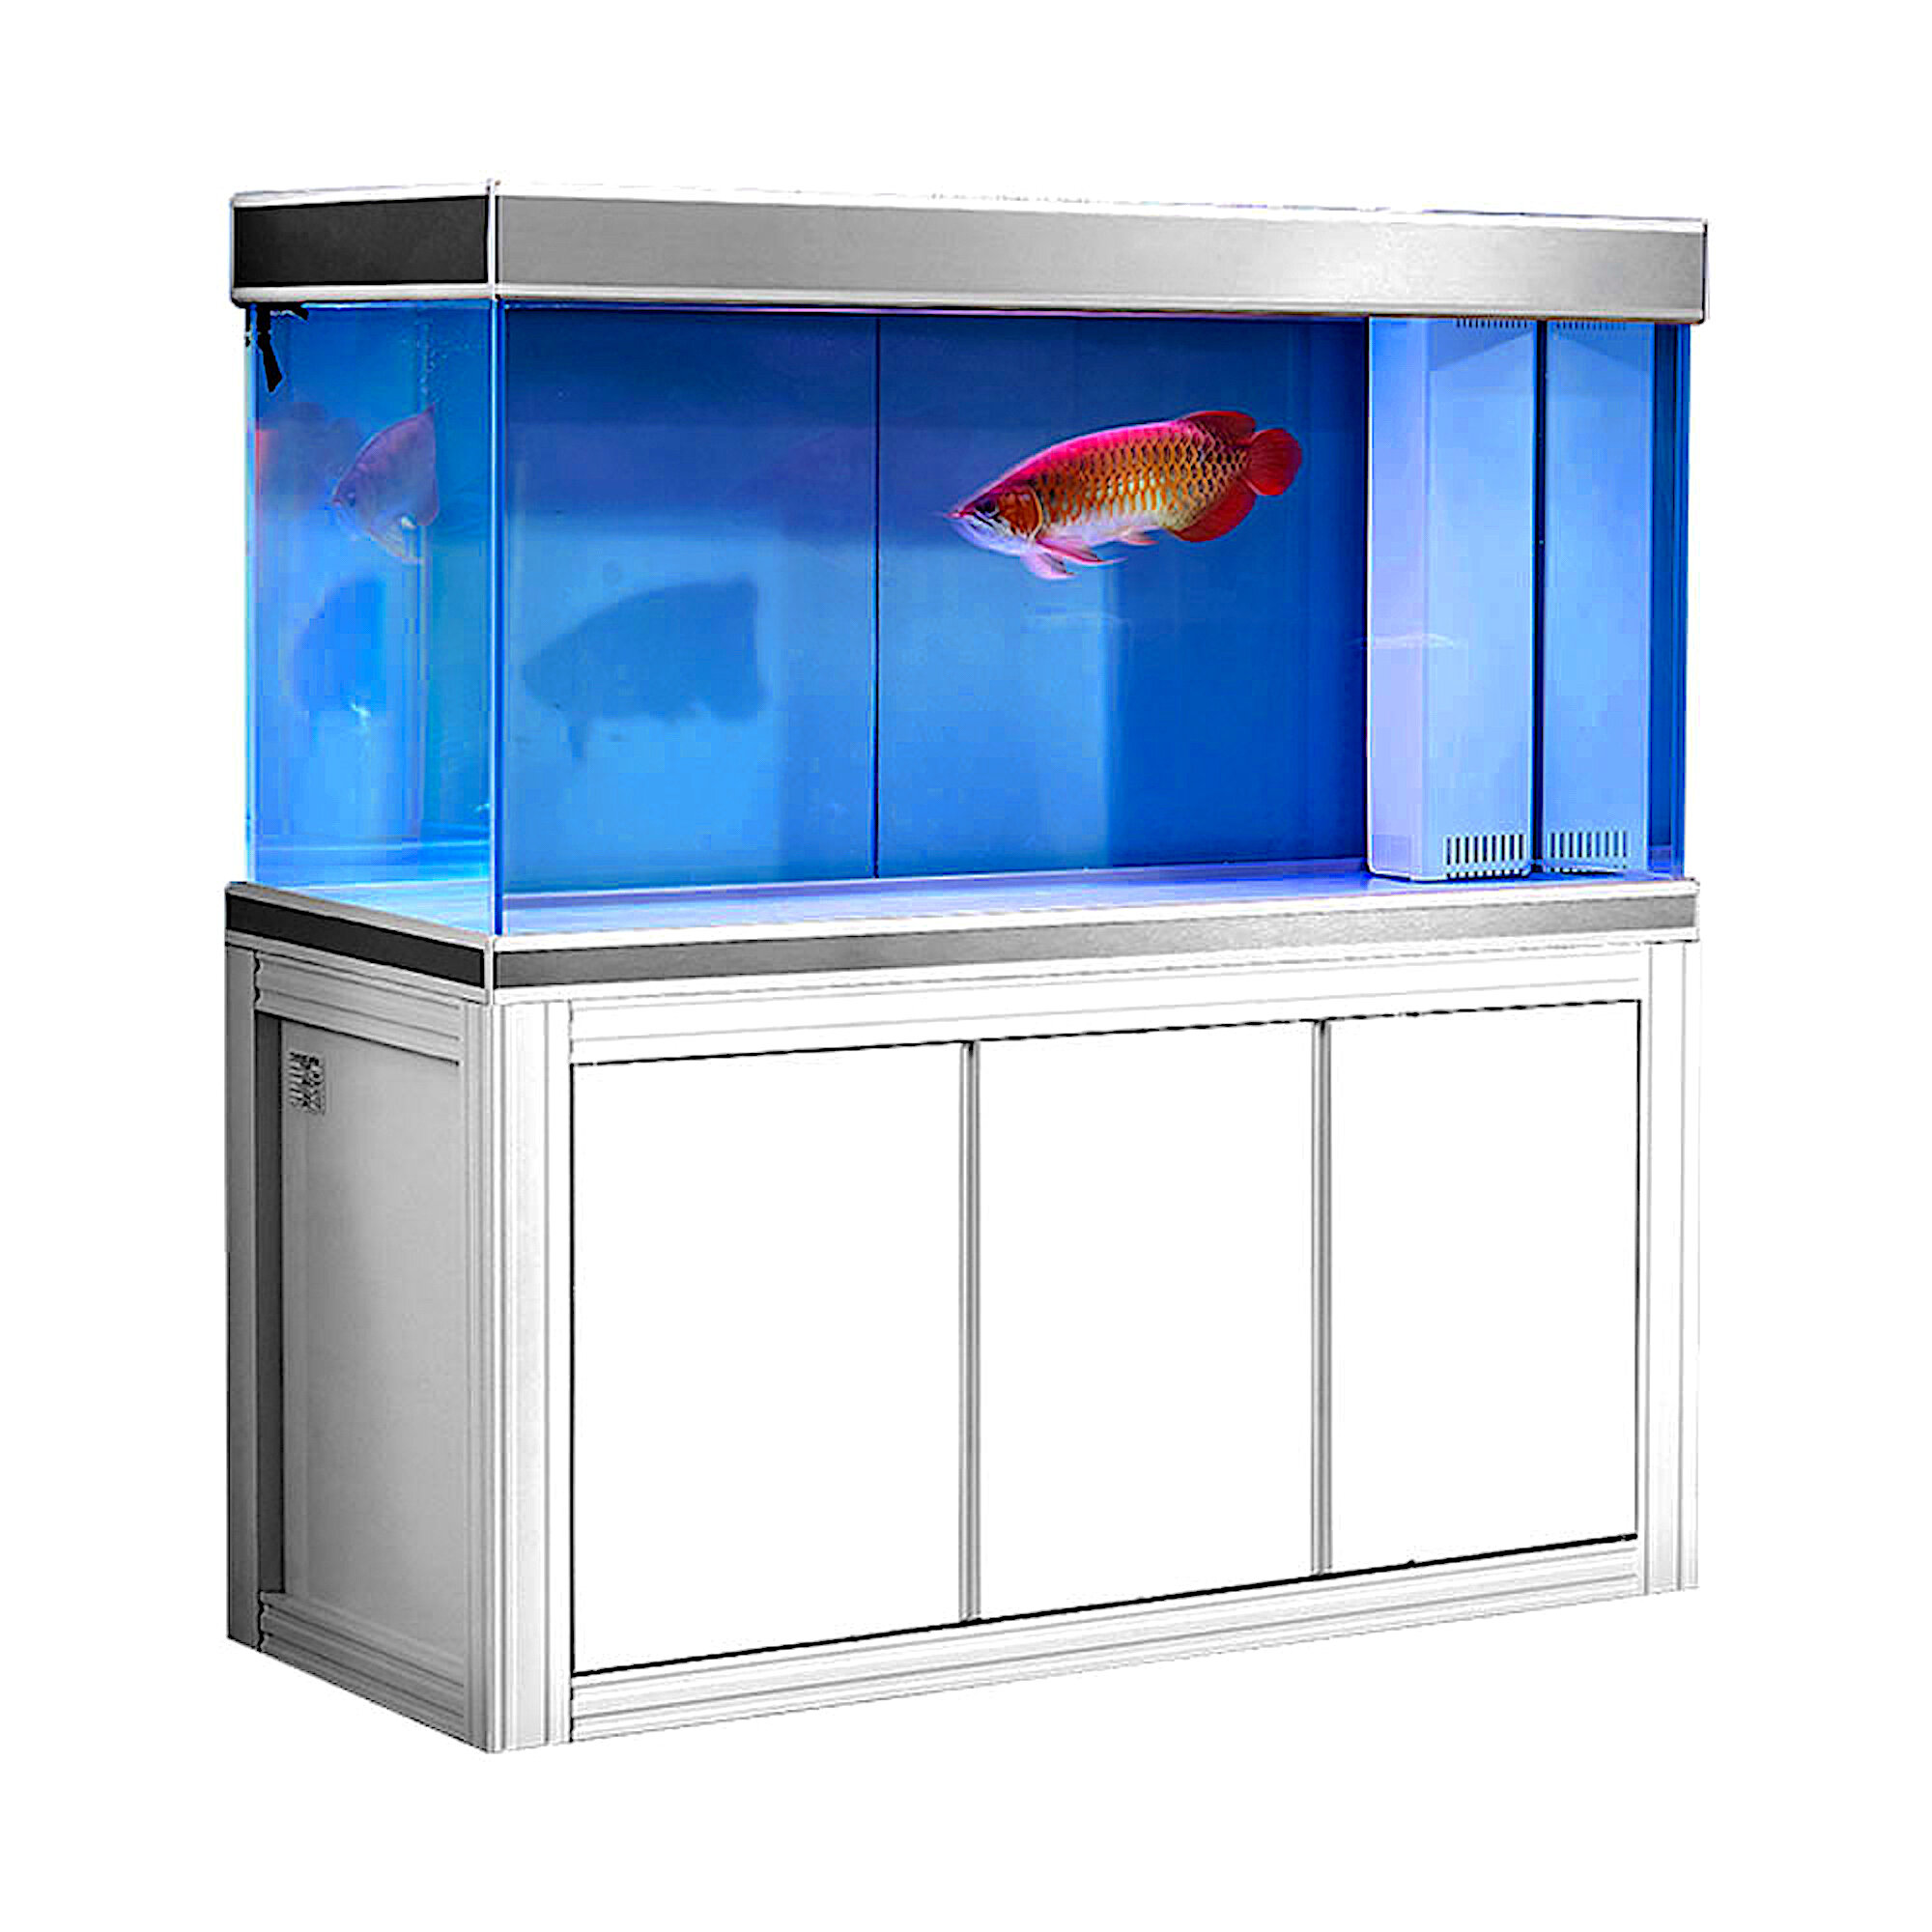 Free 90 gallon fish tank! Big project alert